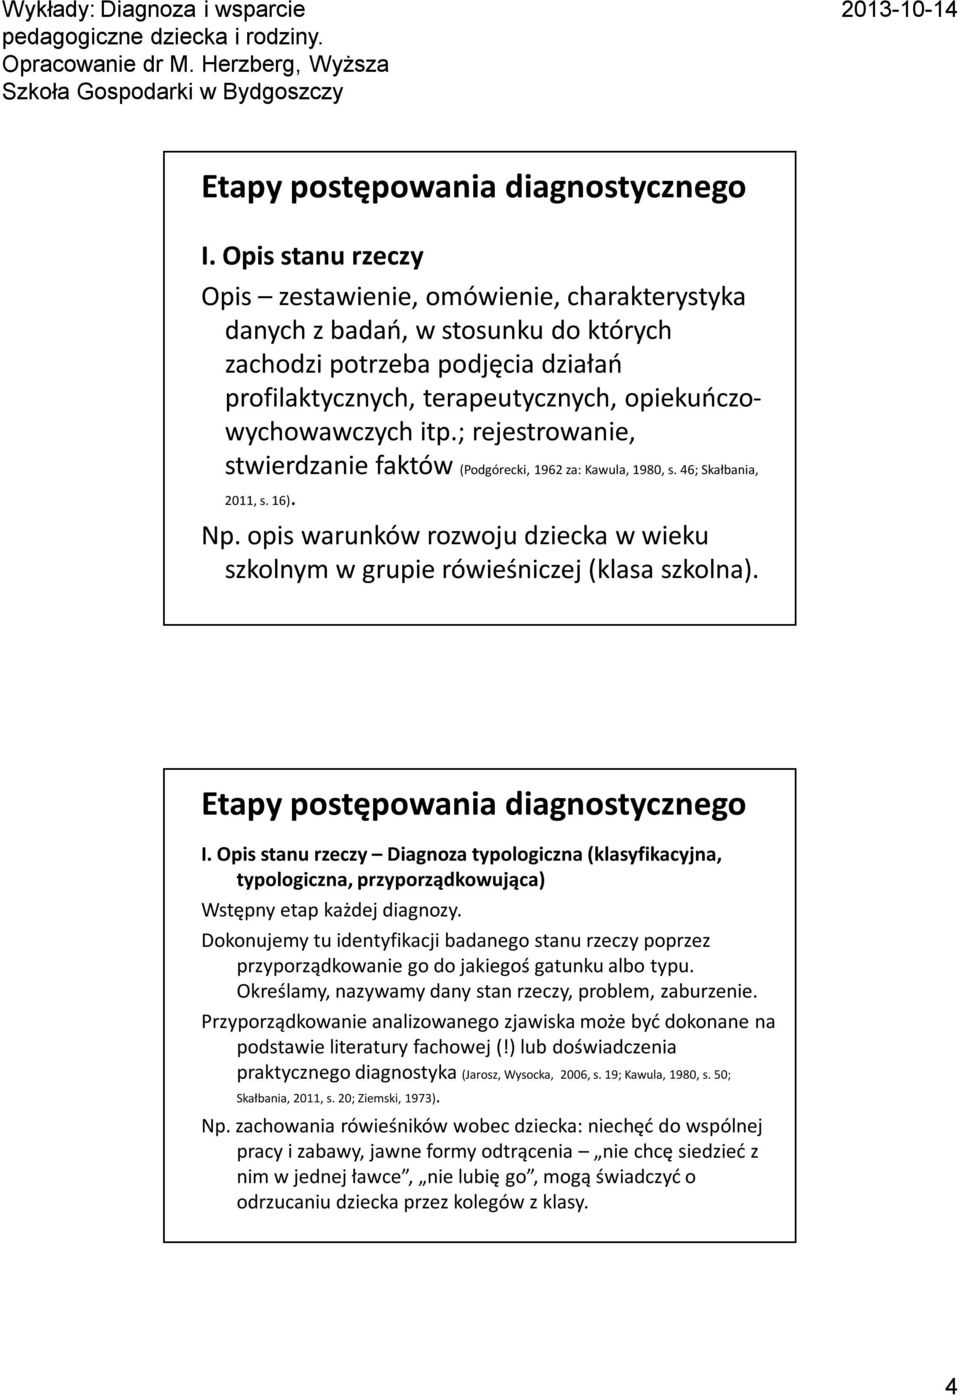 I. Opis stanu rzeczy Diagnoza typologiczna (klasyfikacyjna, typologiczna, przyporządkowująca) Wstępny etap każdej diagnozy.